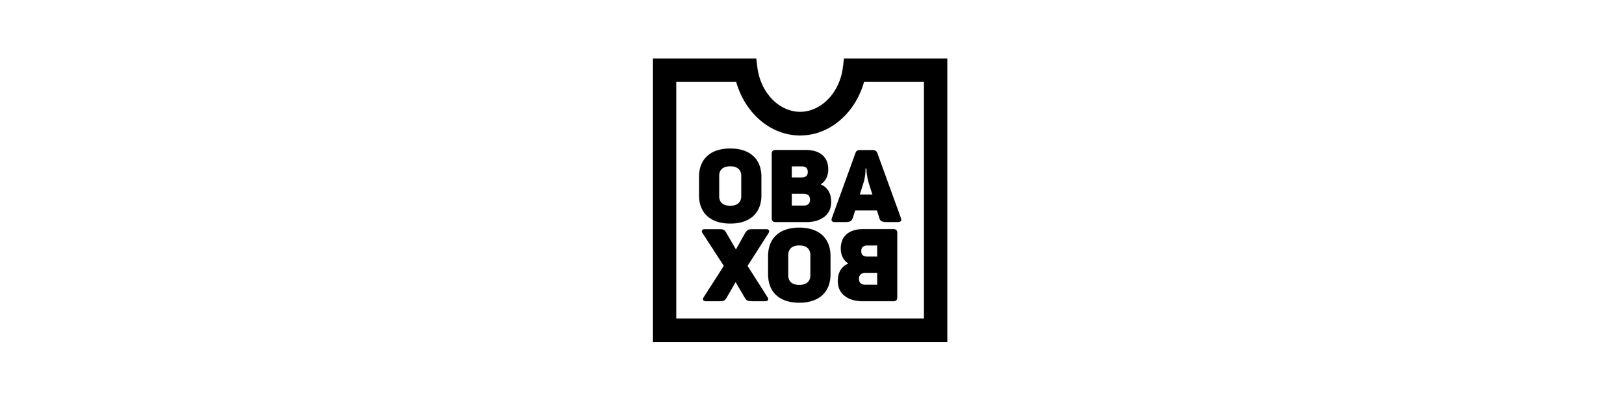 Obabox é confiável? Não compre antes de Ler!